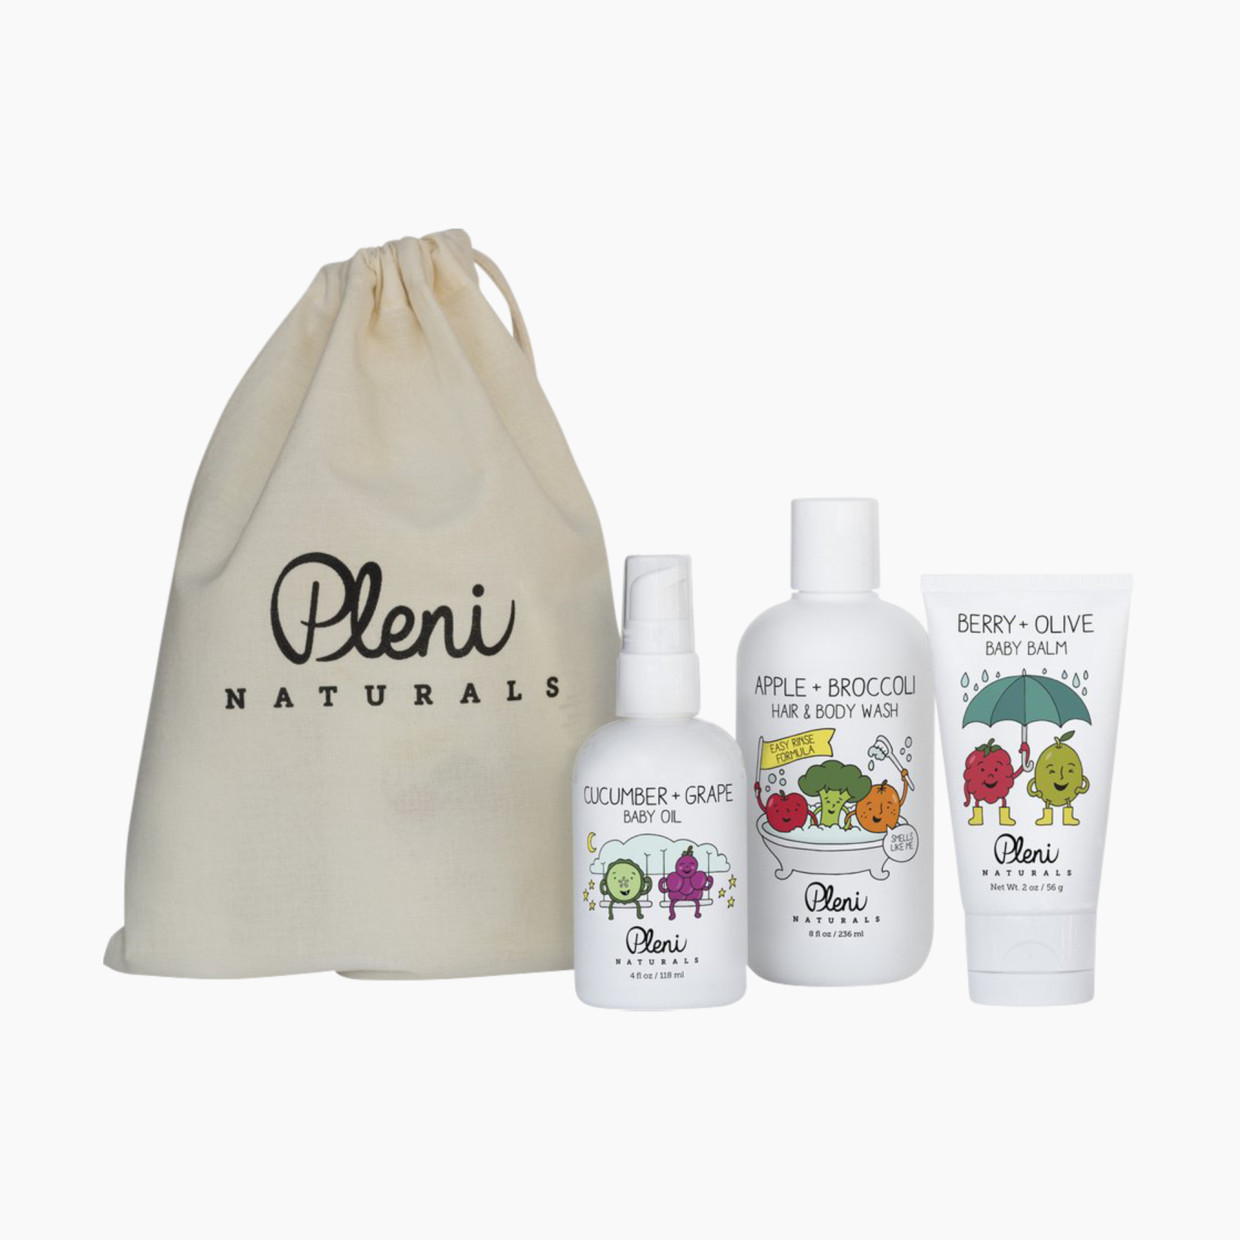 Pleni Naturals Essentials Gift Set.